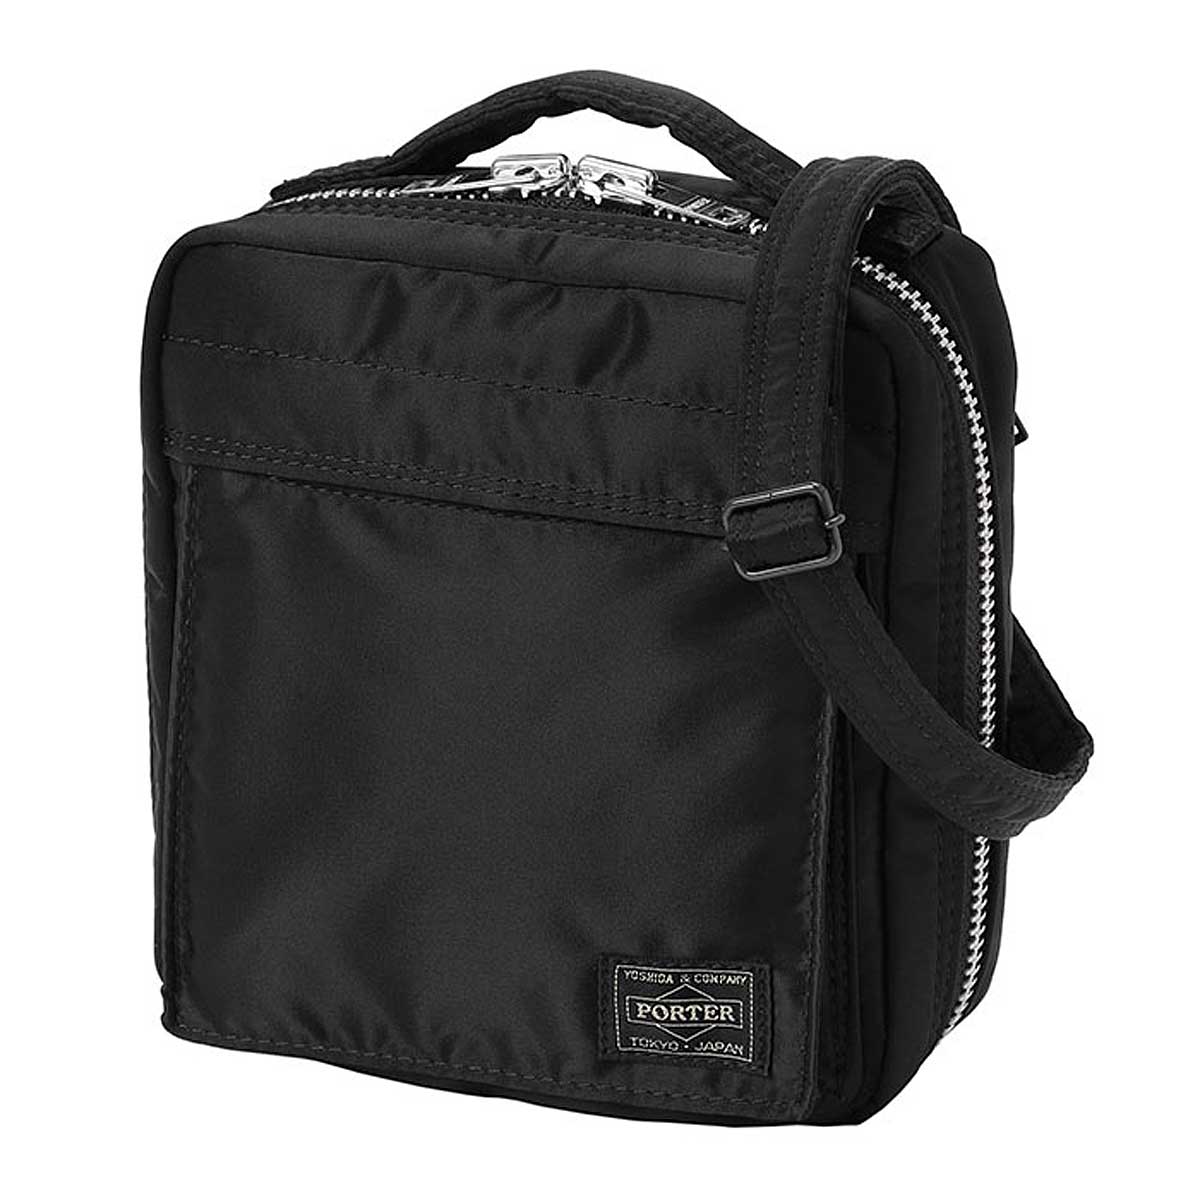 Porter Yoshida & Co Tanker Shoulder Bag, Black/Black